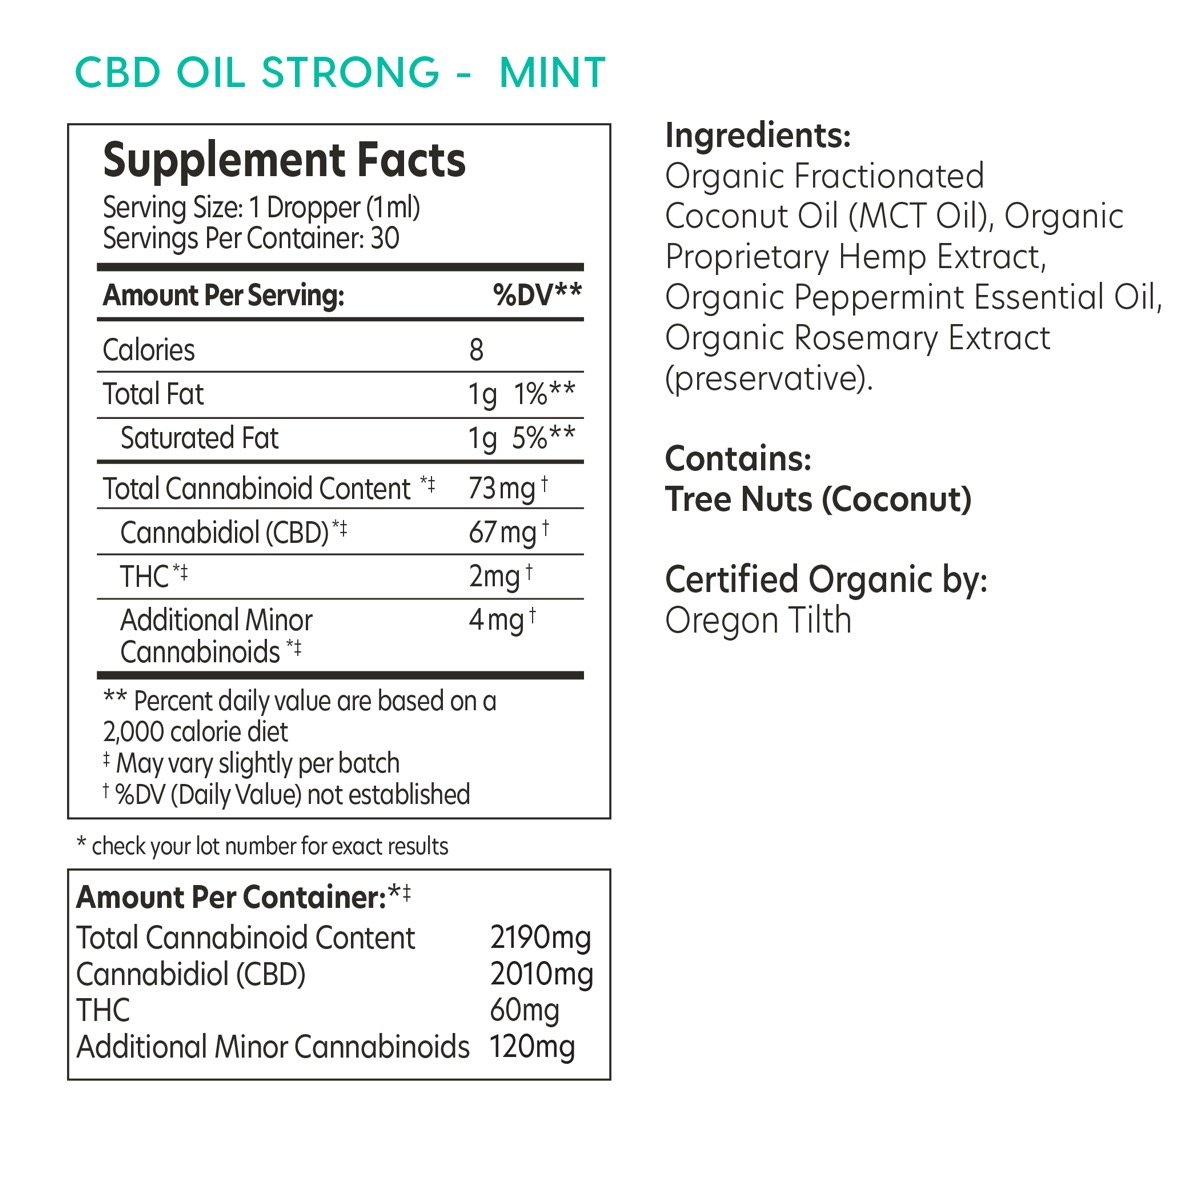 aspen-green-strong-mint-cbd-oil-facts